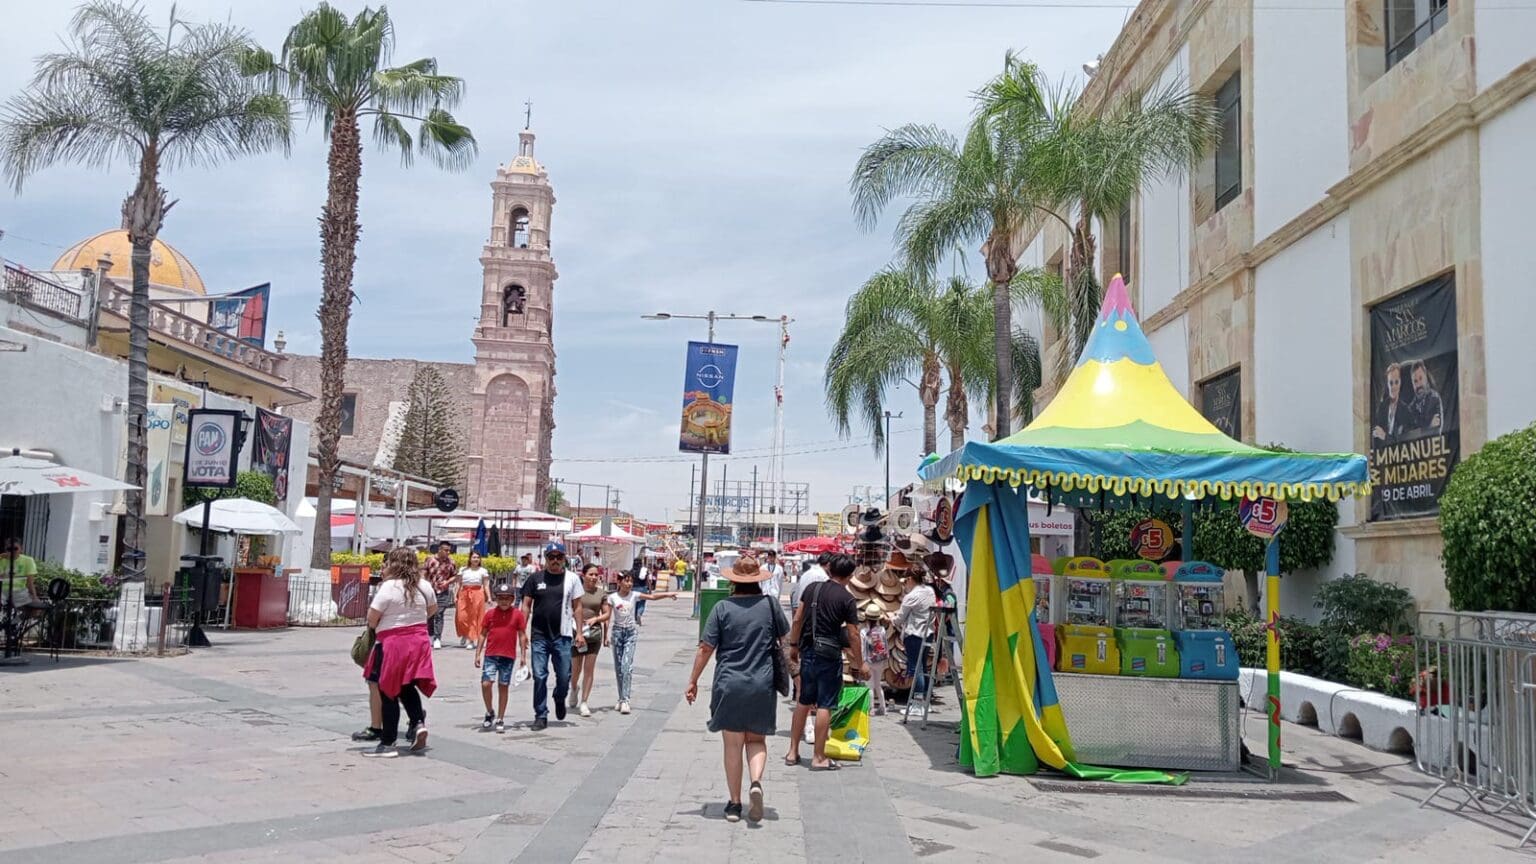 Se esperan más de diez millones de visitas a la Feria de San Marcos